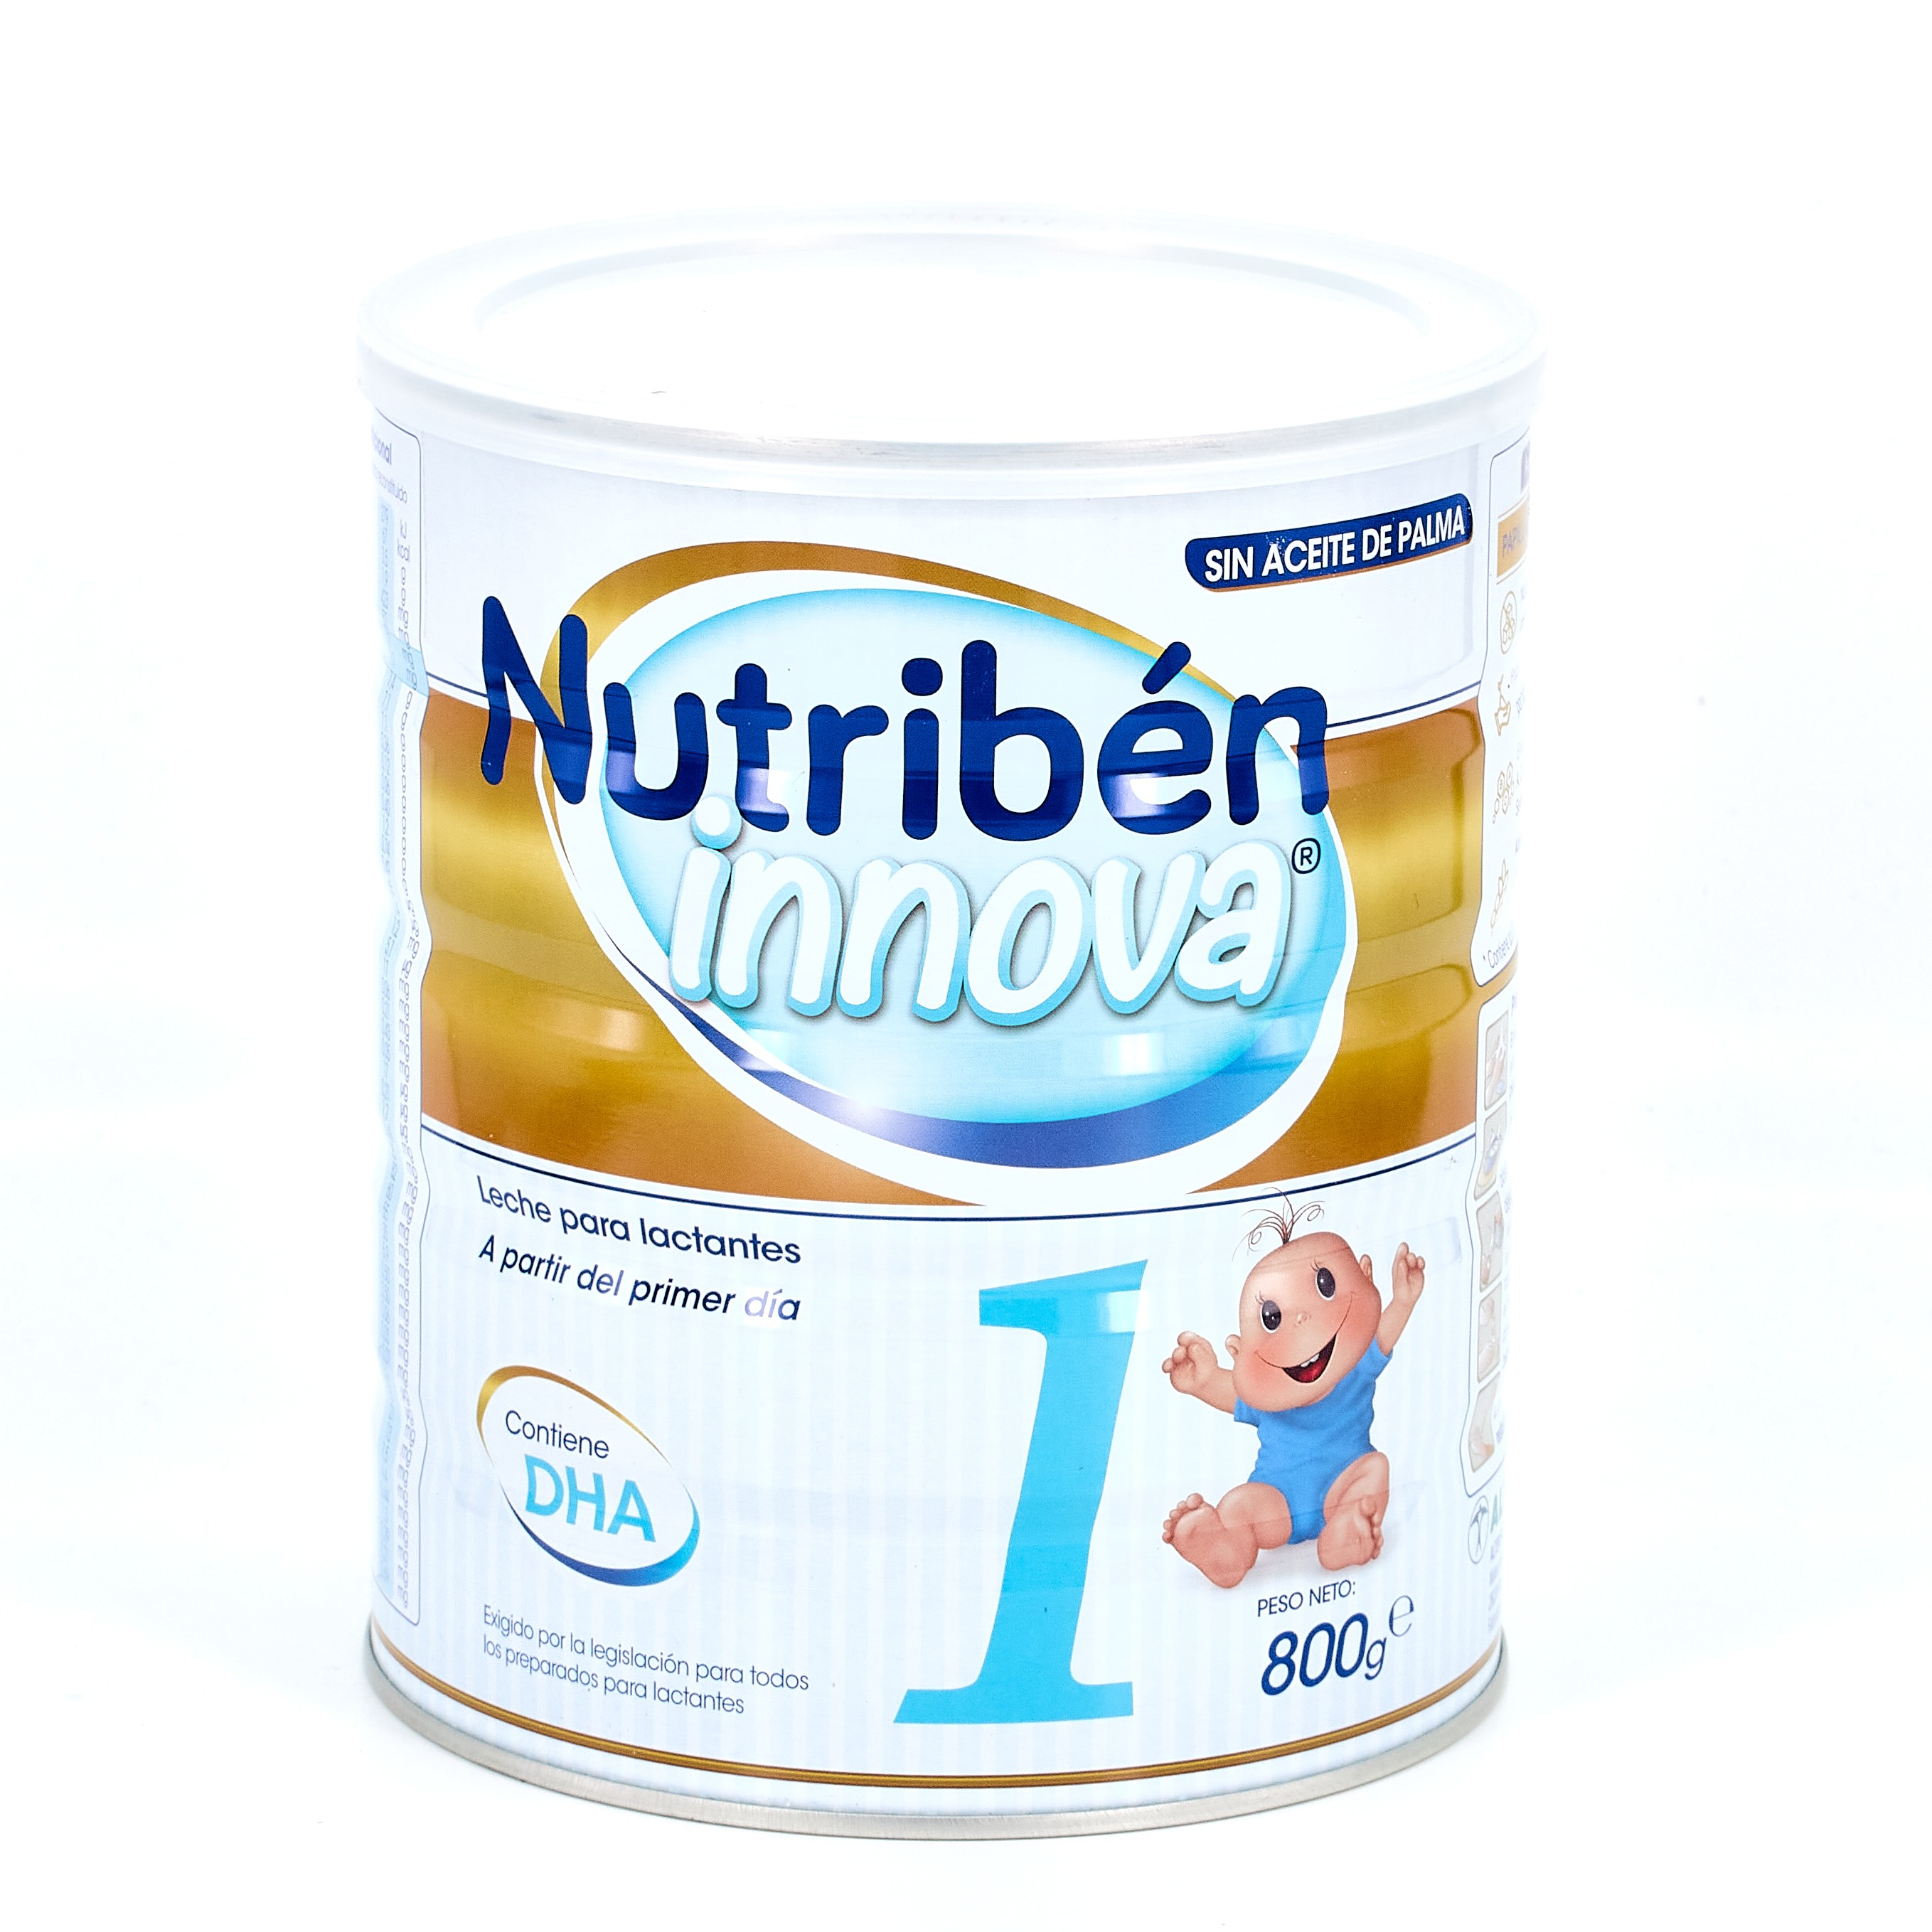 Nestlé nativa 1 inicio 800g…  Artículos para el bebé y la mamá